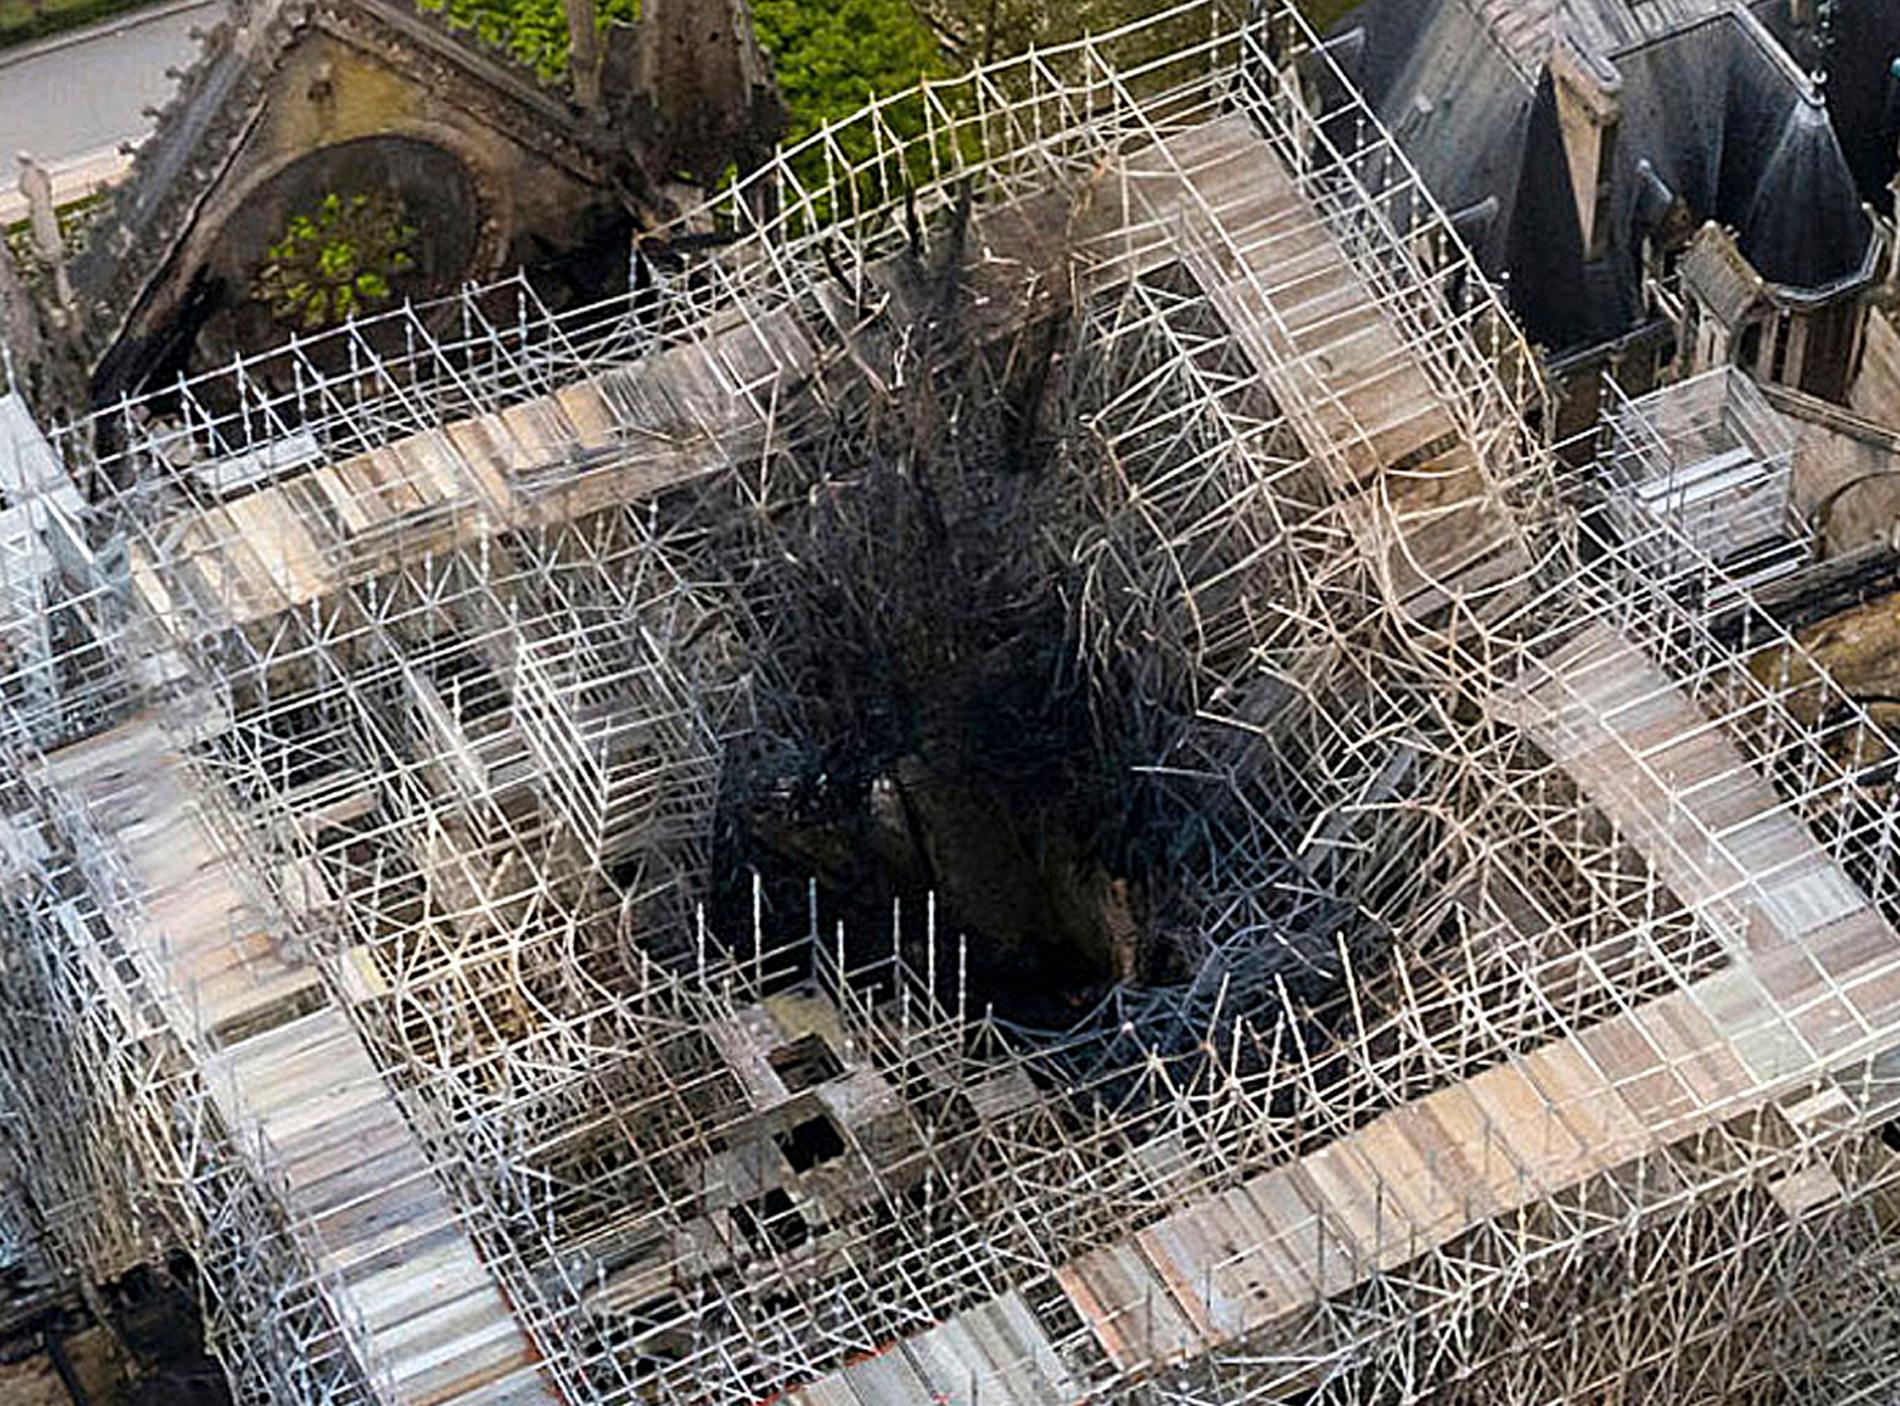 Här stod en gång katedralen Notre-Dames berömda spira. Efter branden i april kvarstår bara byggställningar som nu ska monteras ned. Arkivbild.